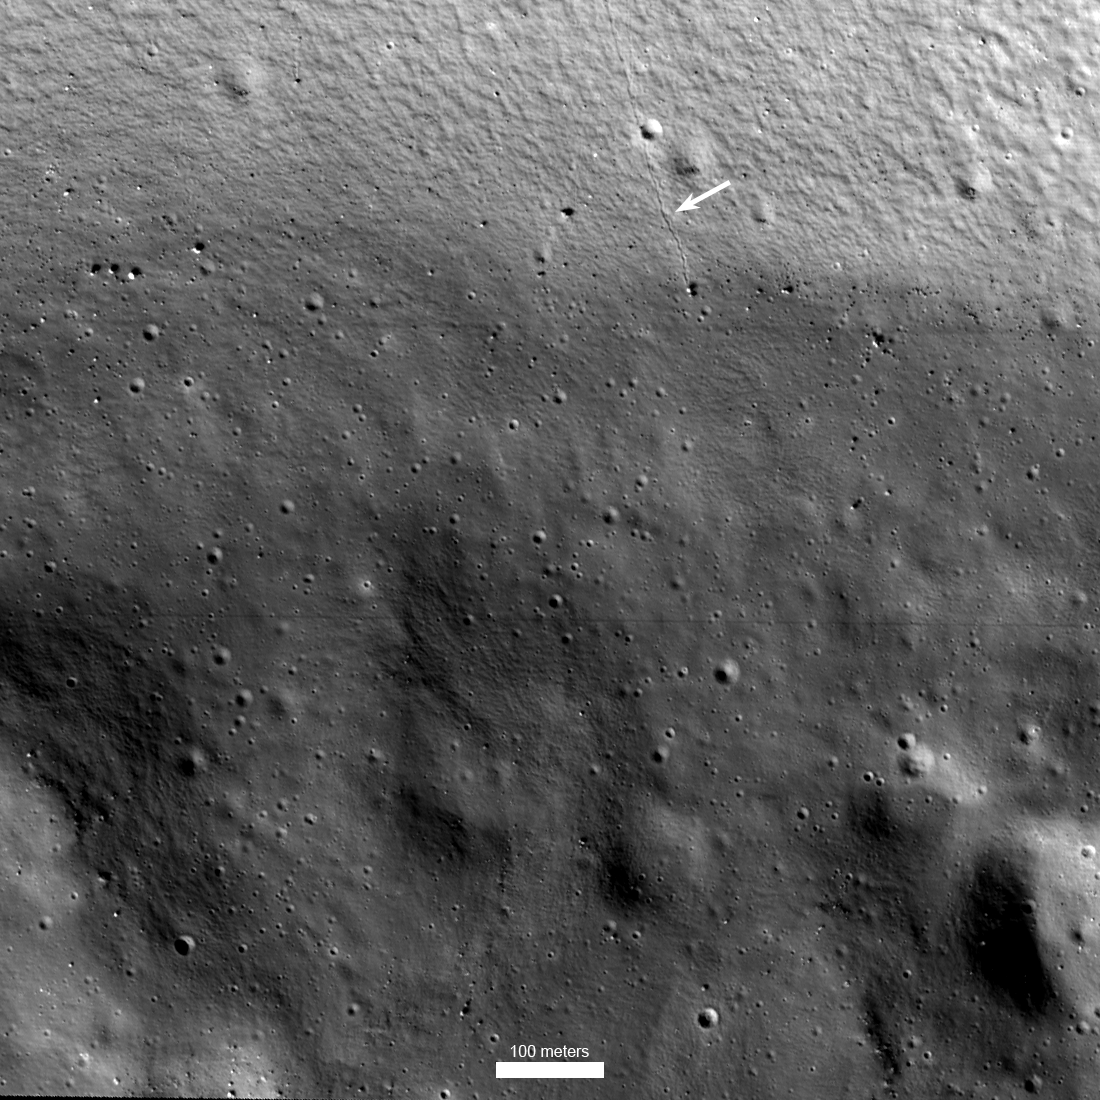 Auf dem schwarzweißen Bild des Kraters Shackleton auf dem Mond ist am oberen Bildrand eine Rille erkennbar, sie ist mit einem weißen Pfeil markiert.